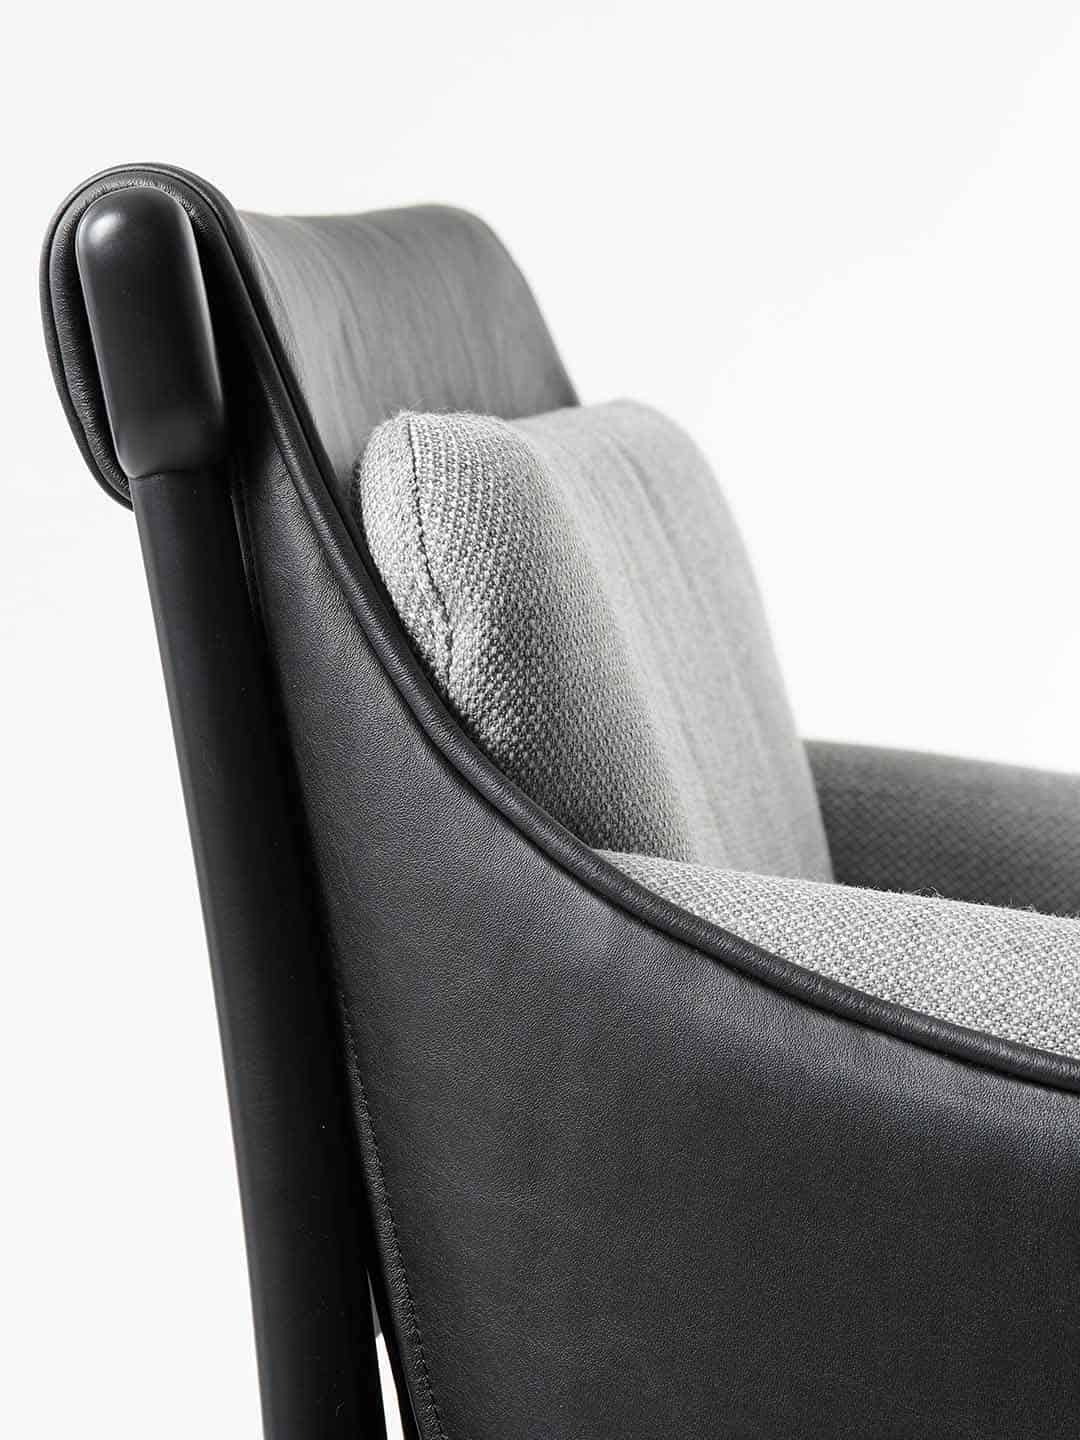 Кресло Garsnas Viva премиум класса с обивкой светло-серого цвета